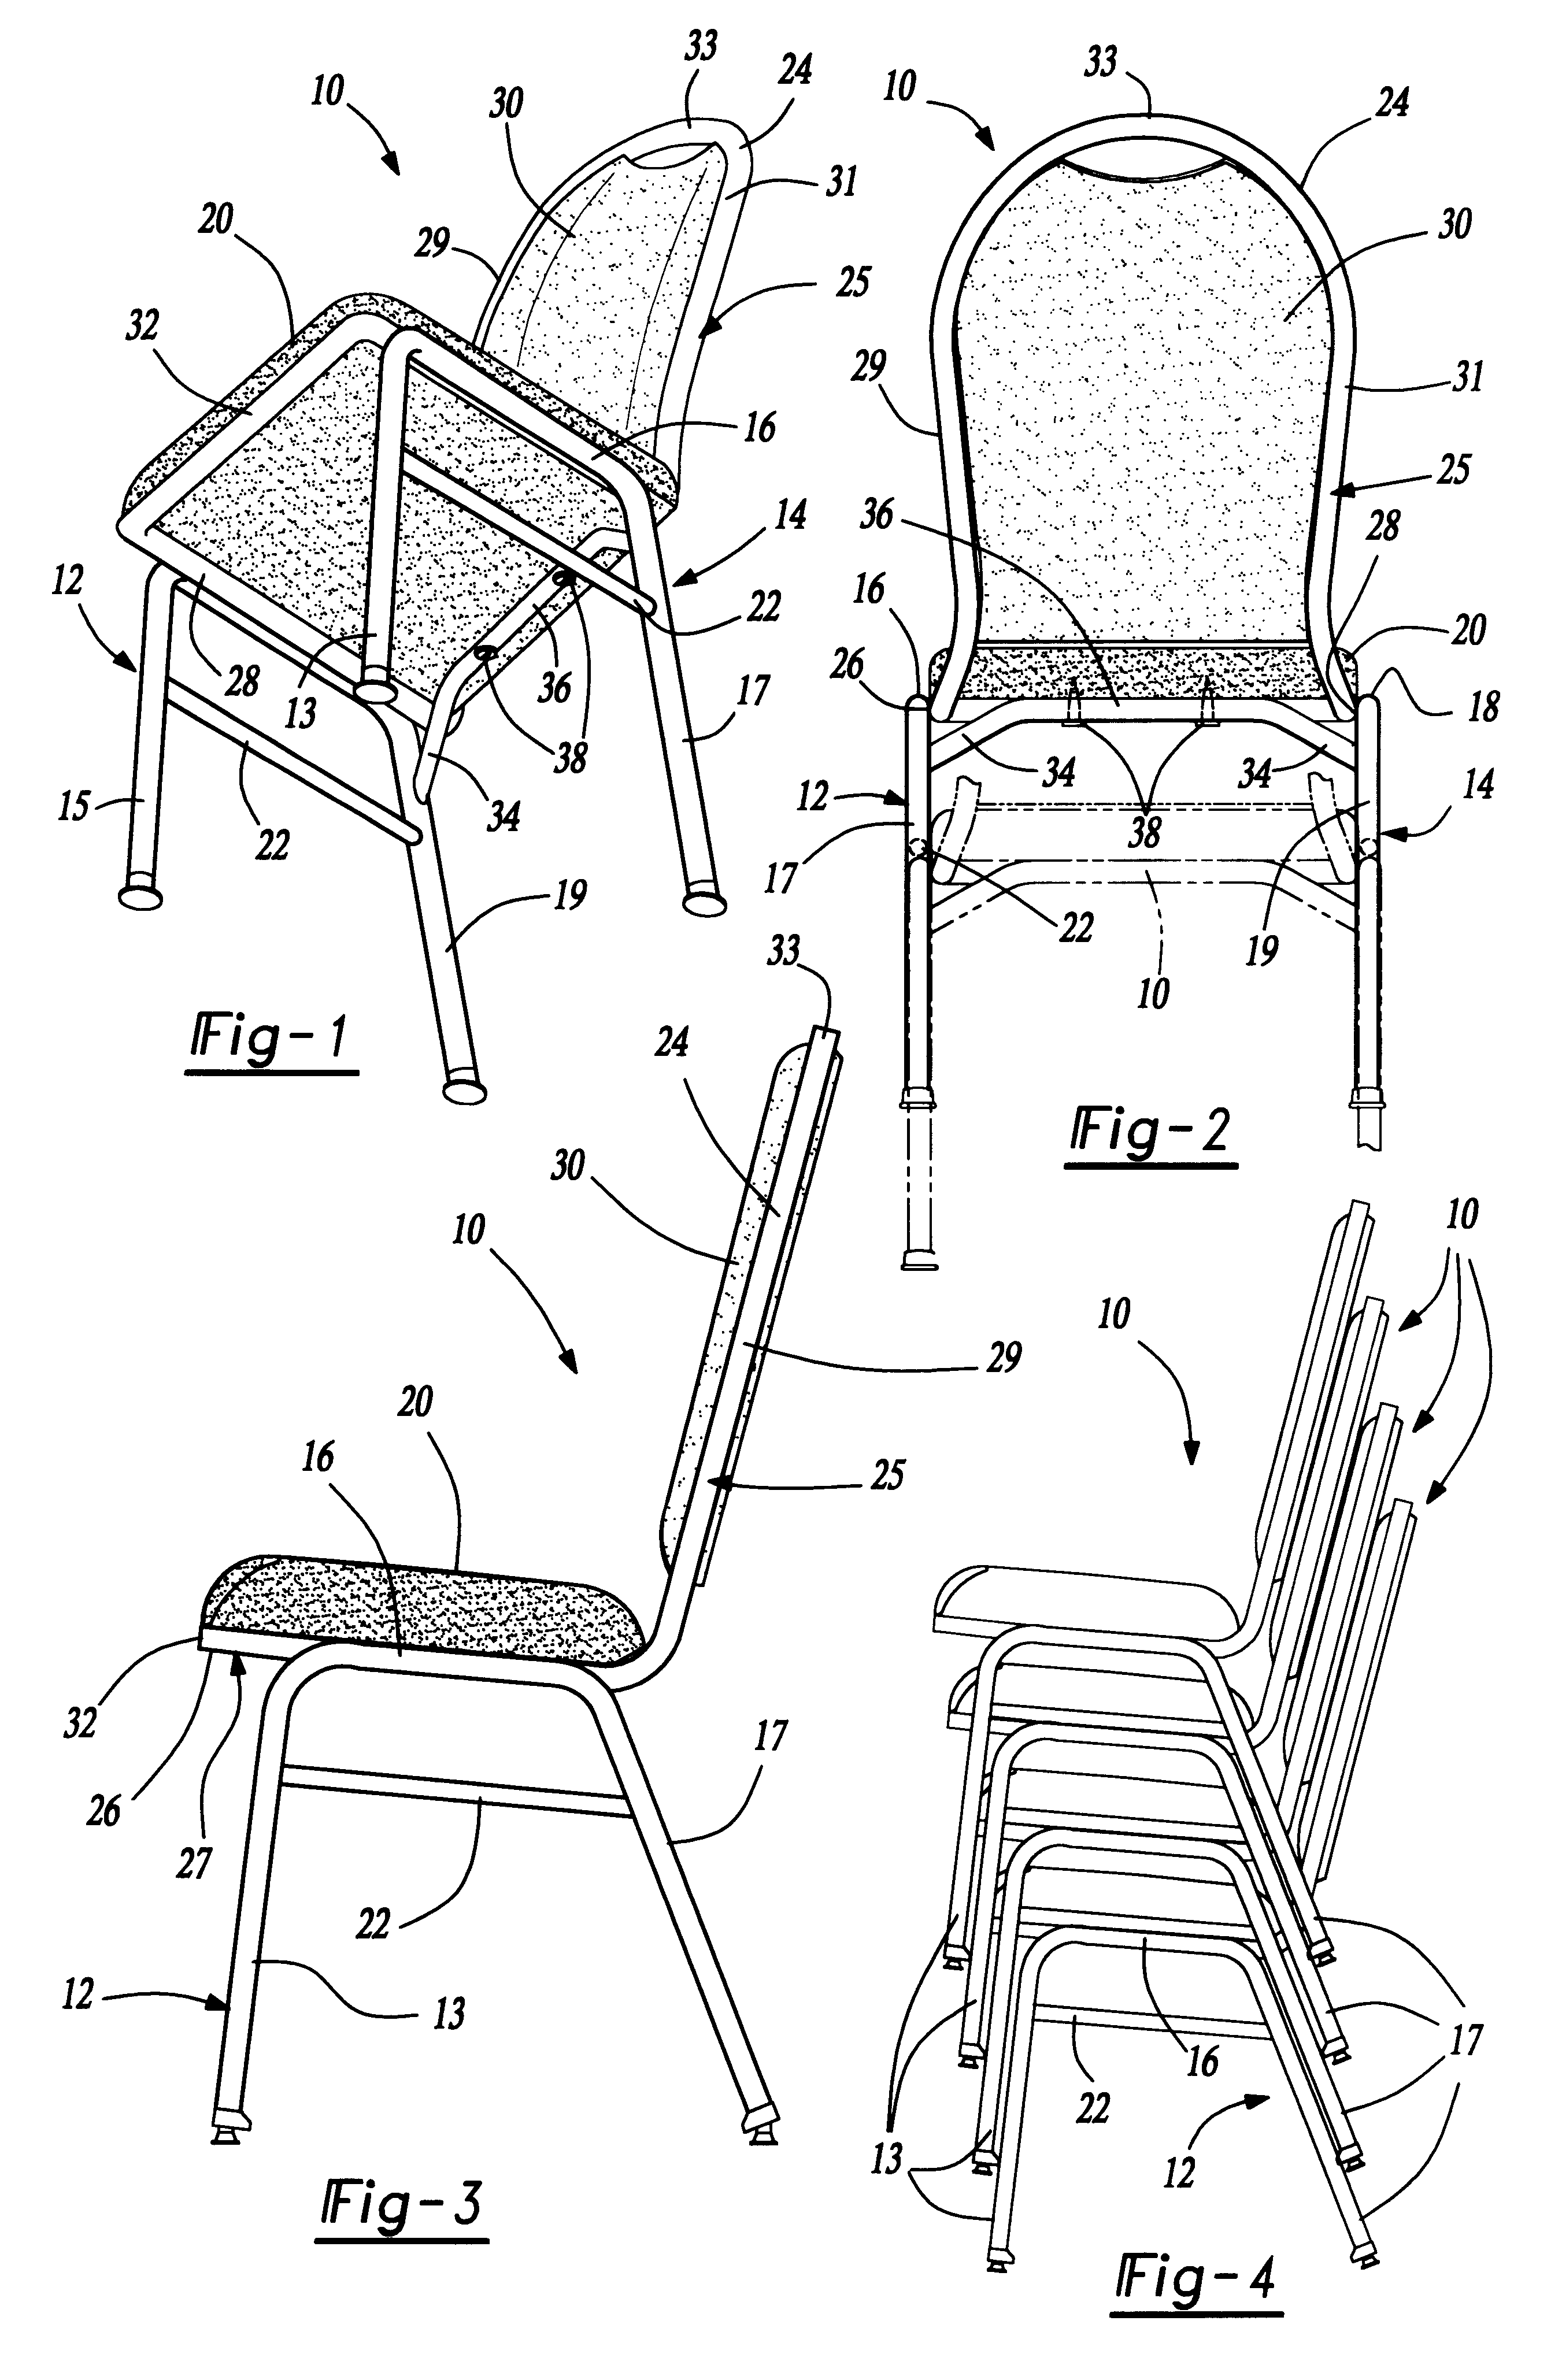 Chair with leg reinforcement bar